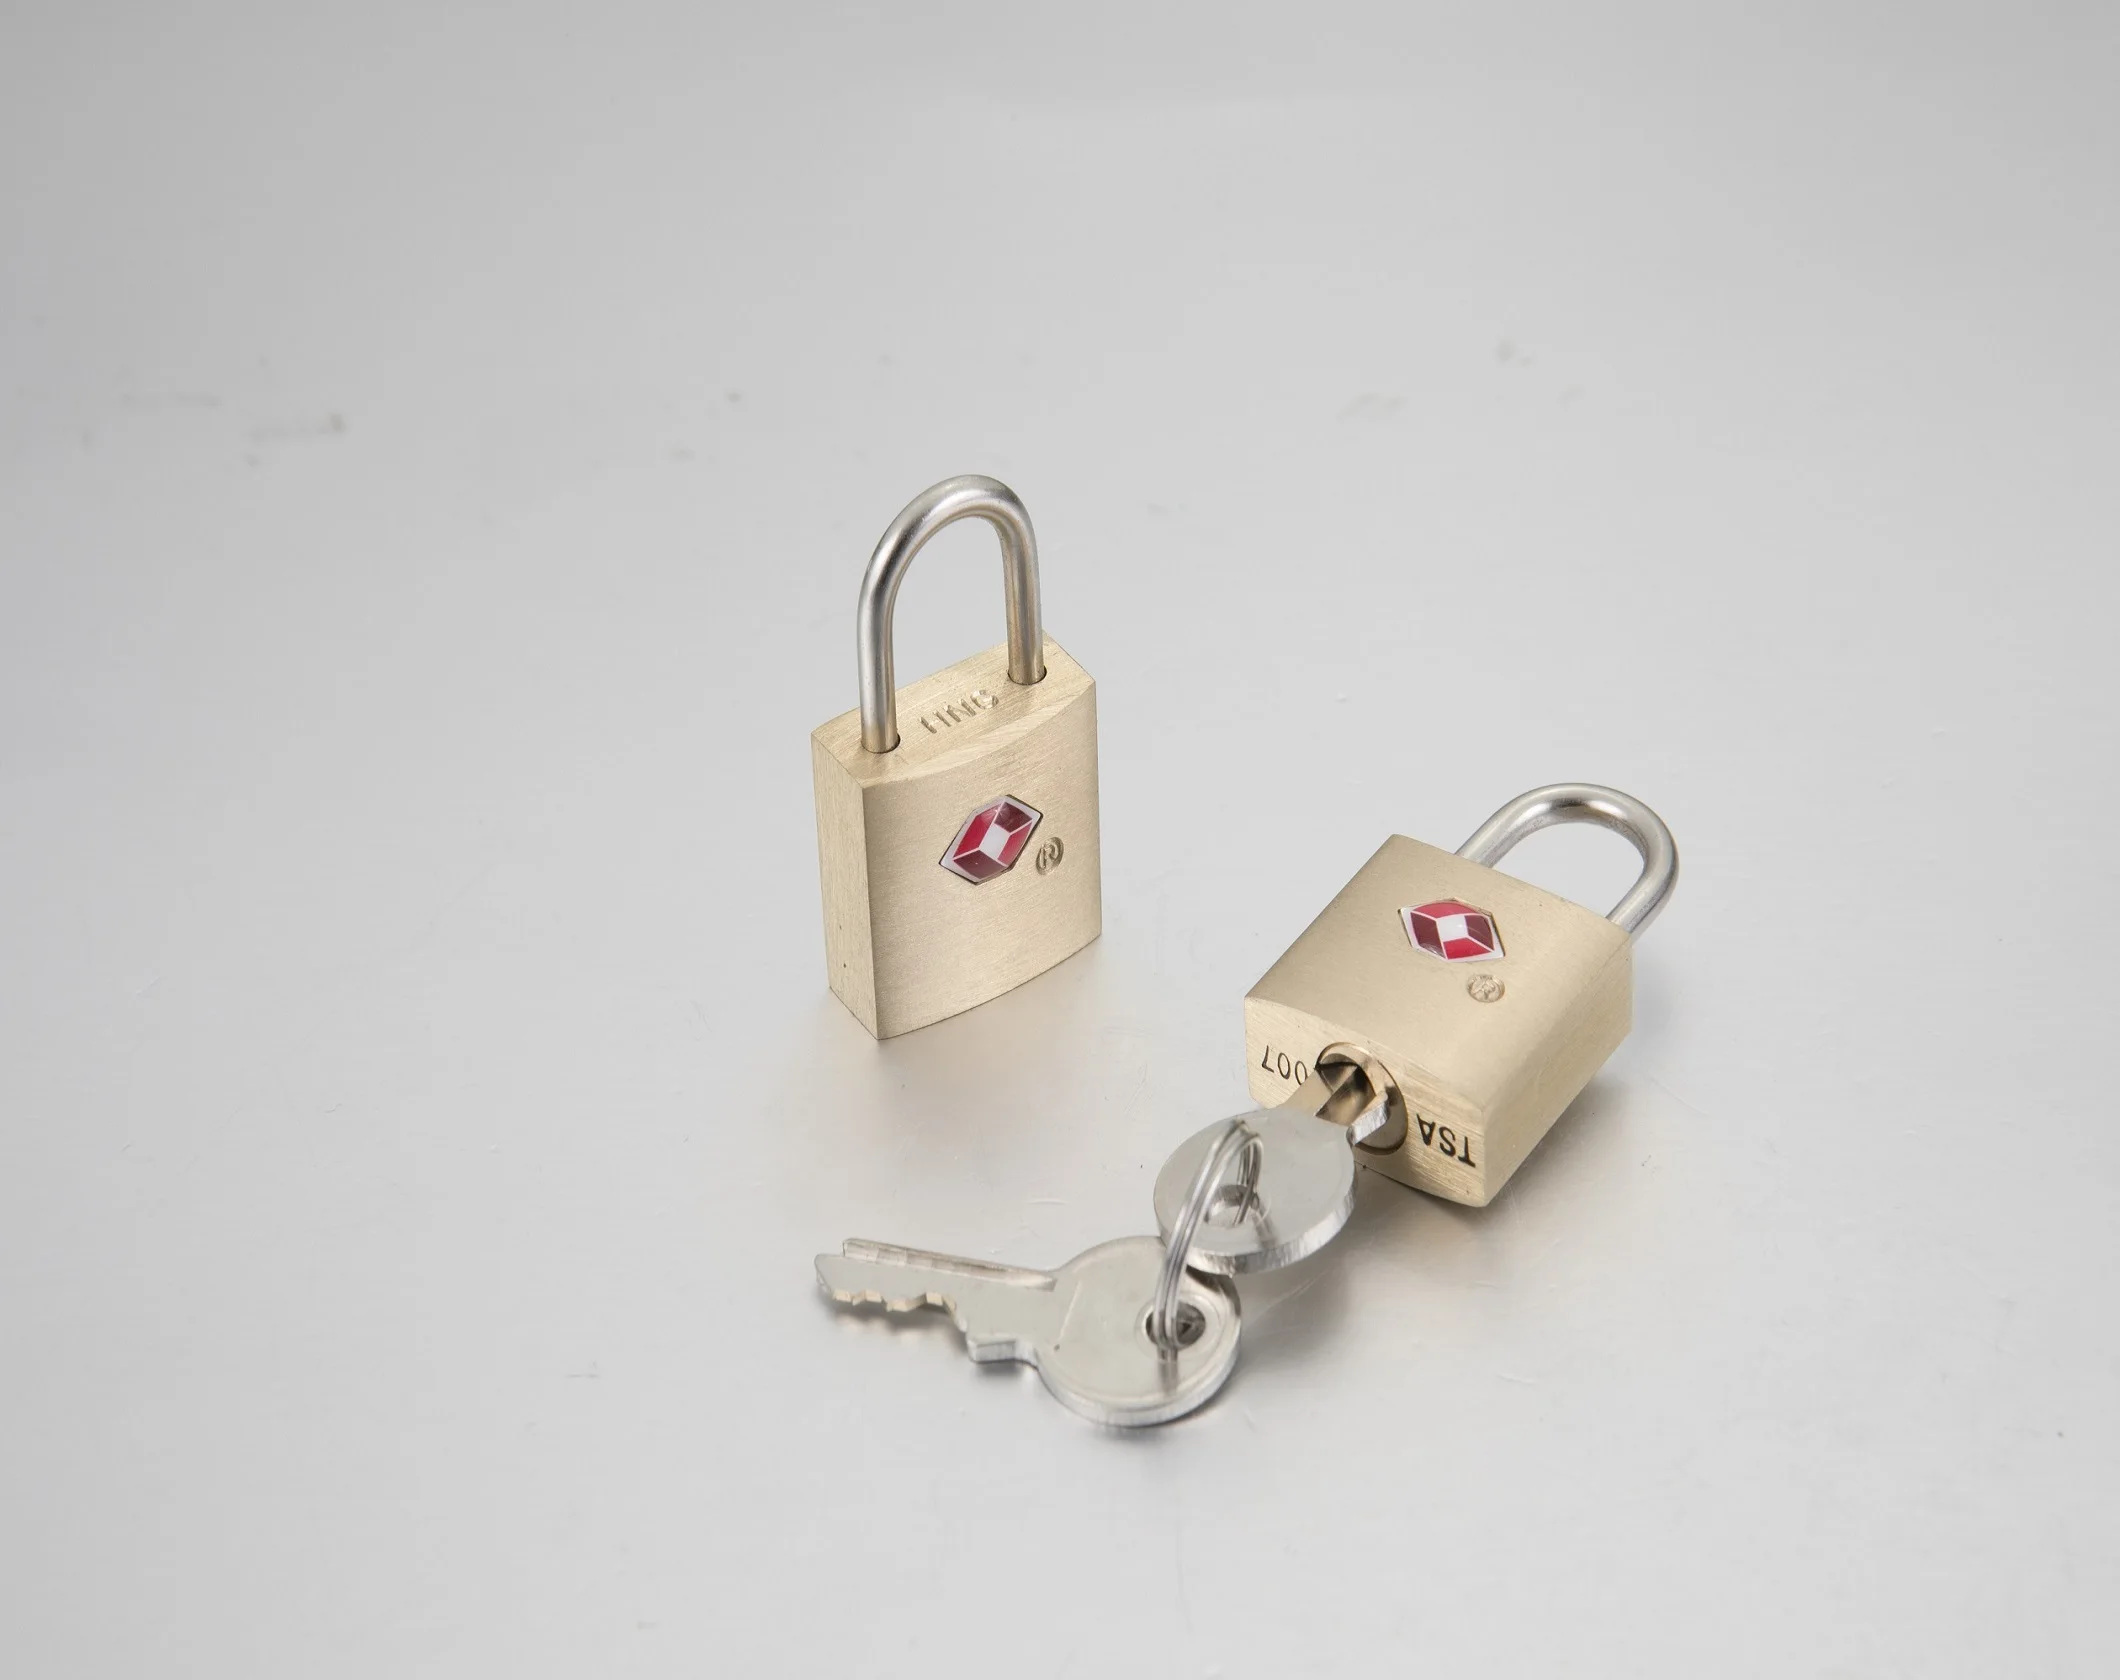 Tsa 007 Small Brass Luggage Key Lock - Buy Tsa 007 Brass Luggage Padlock Tsa Key Lock Product Alibaba.com